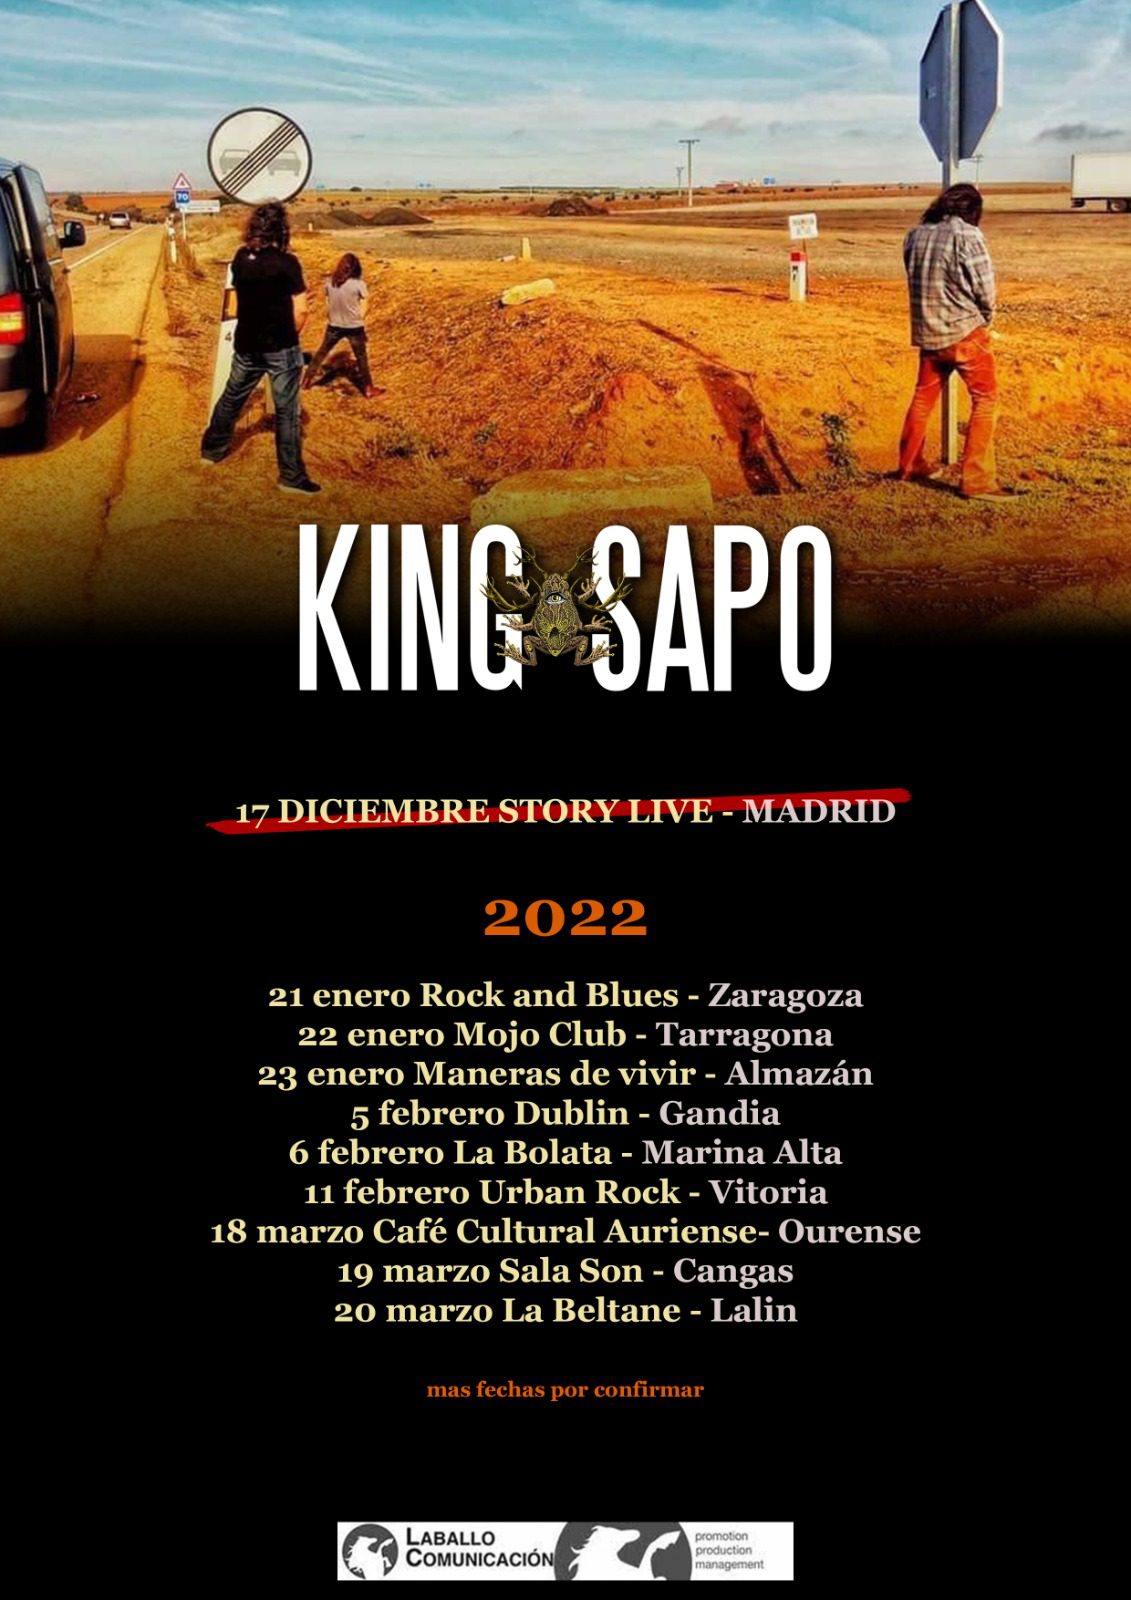 Conciertos del fin de semana de King Sapo y Adelanto del nuevo LP «Sexo en Marte»